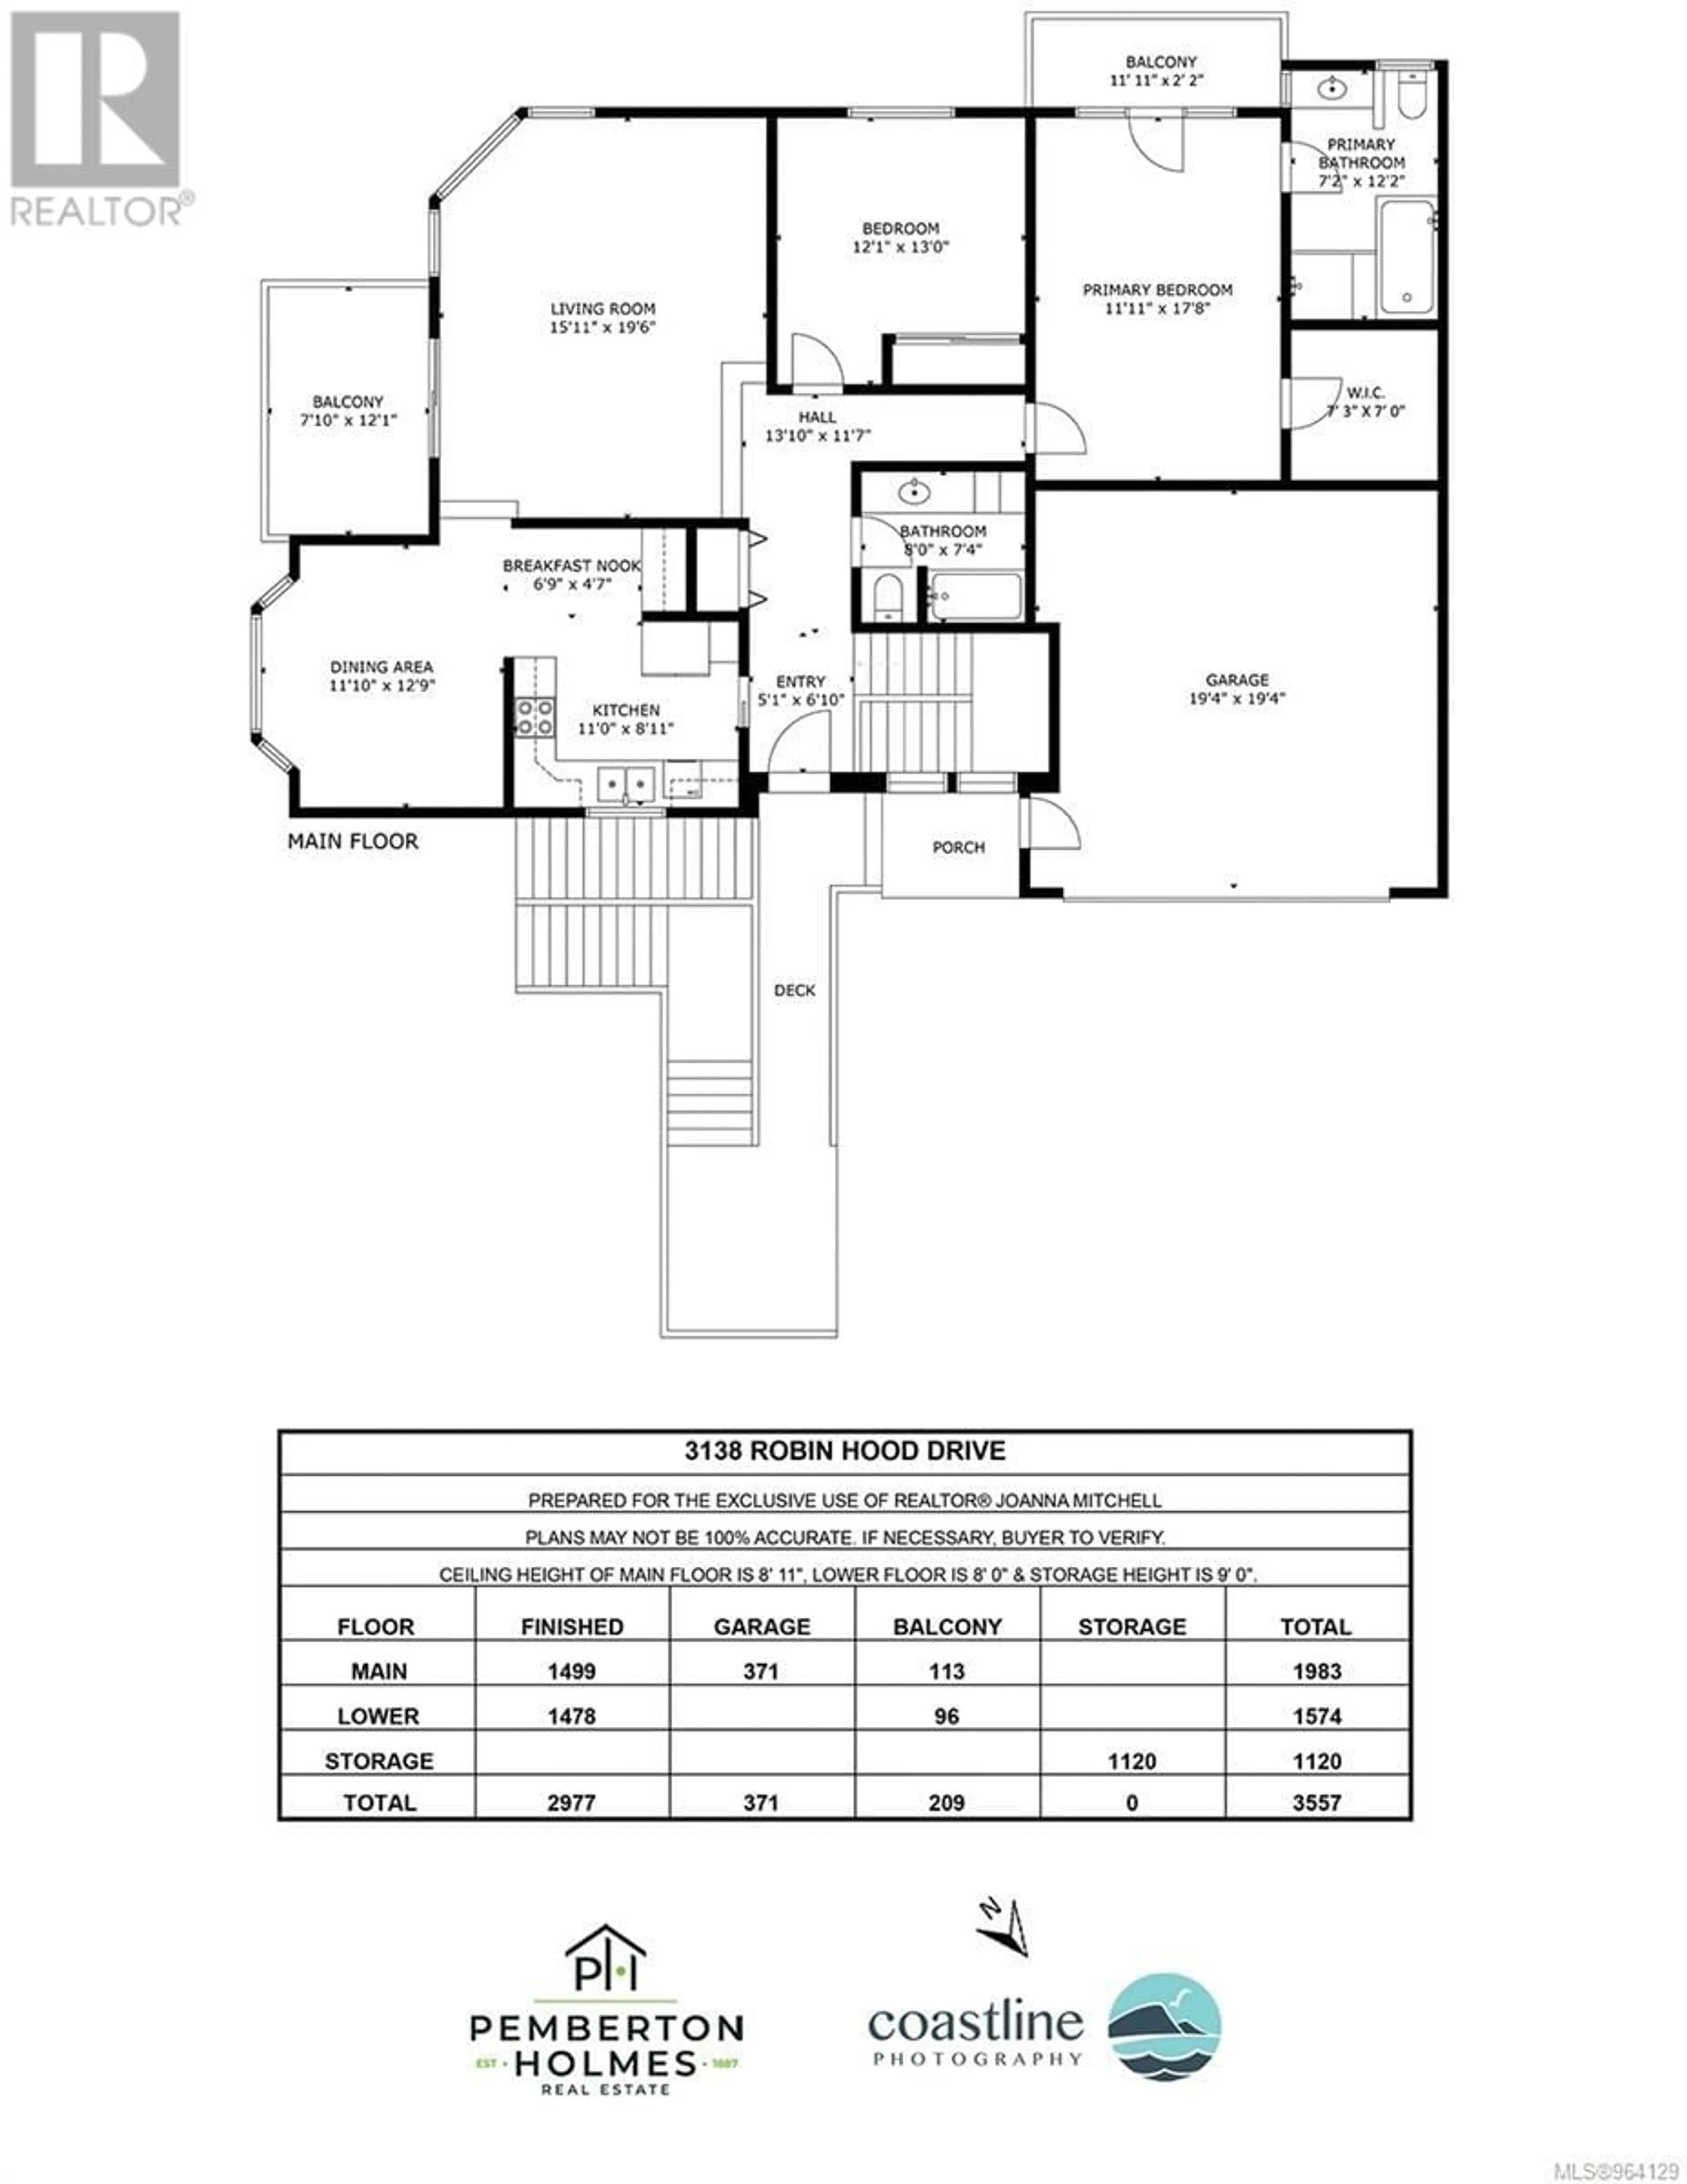 Floor plan for 3138 Robin Hood Dr, Nanaimo British Columbia V9T1P1